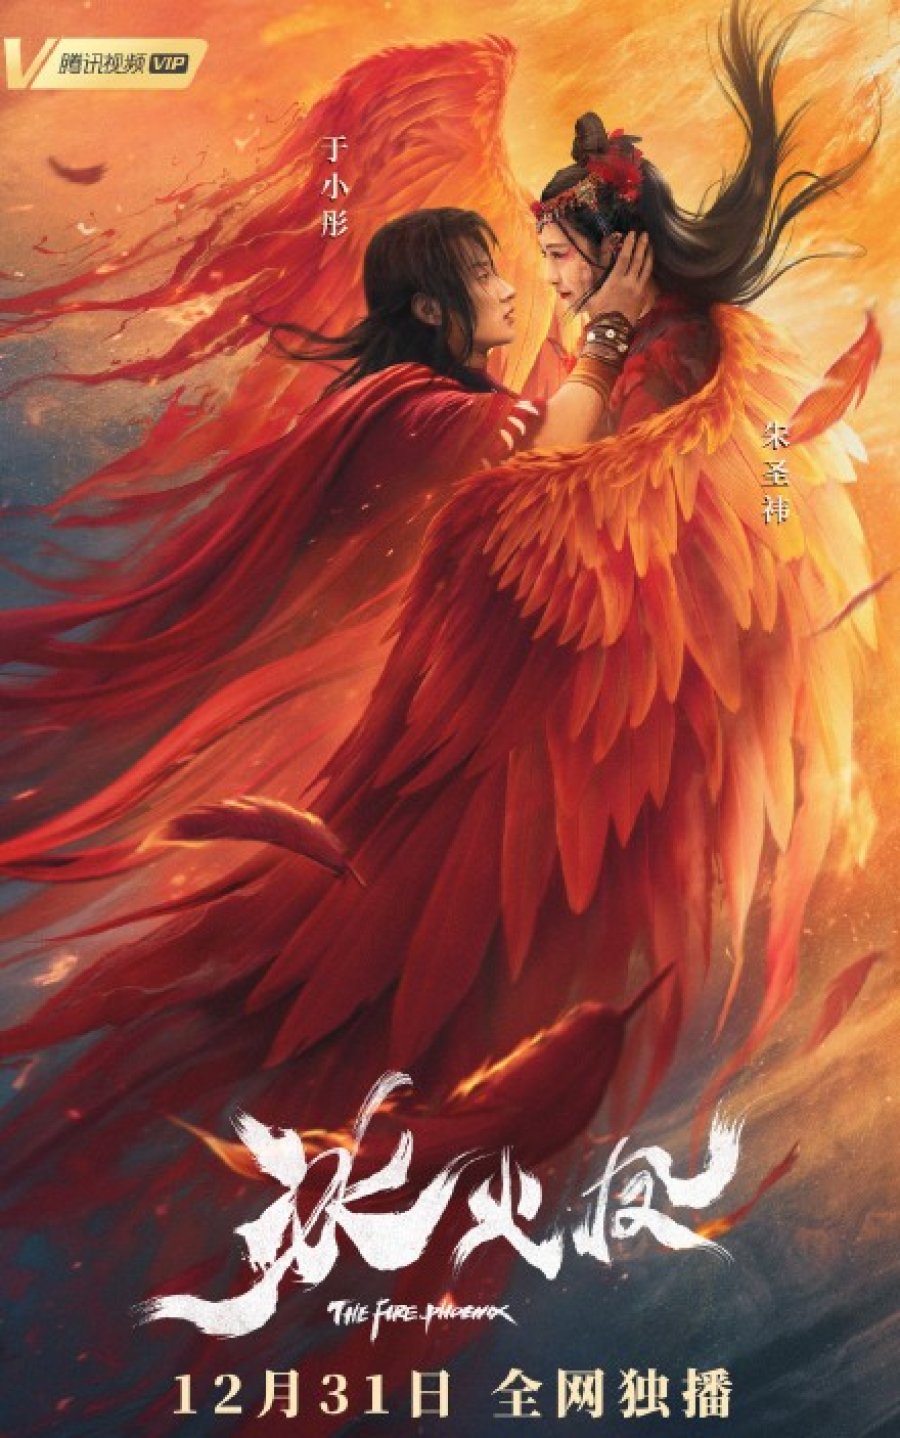 ดูหนังออนไลน์ฟรี The Fire Phoenix (2021) ตำนานรักนางพญาหงษ์